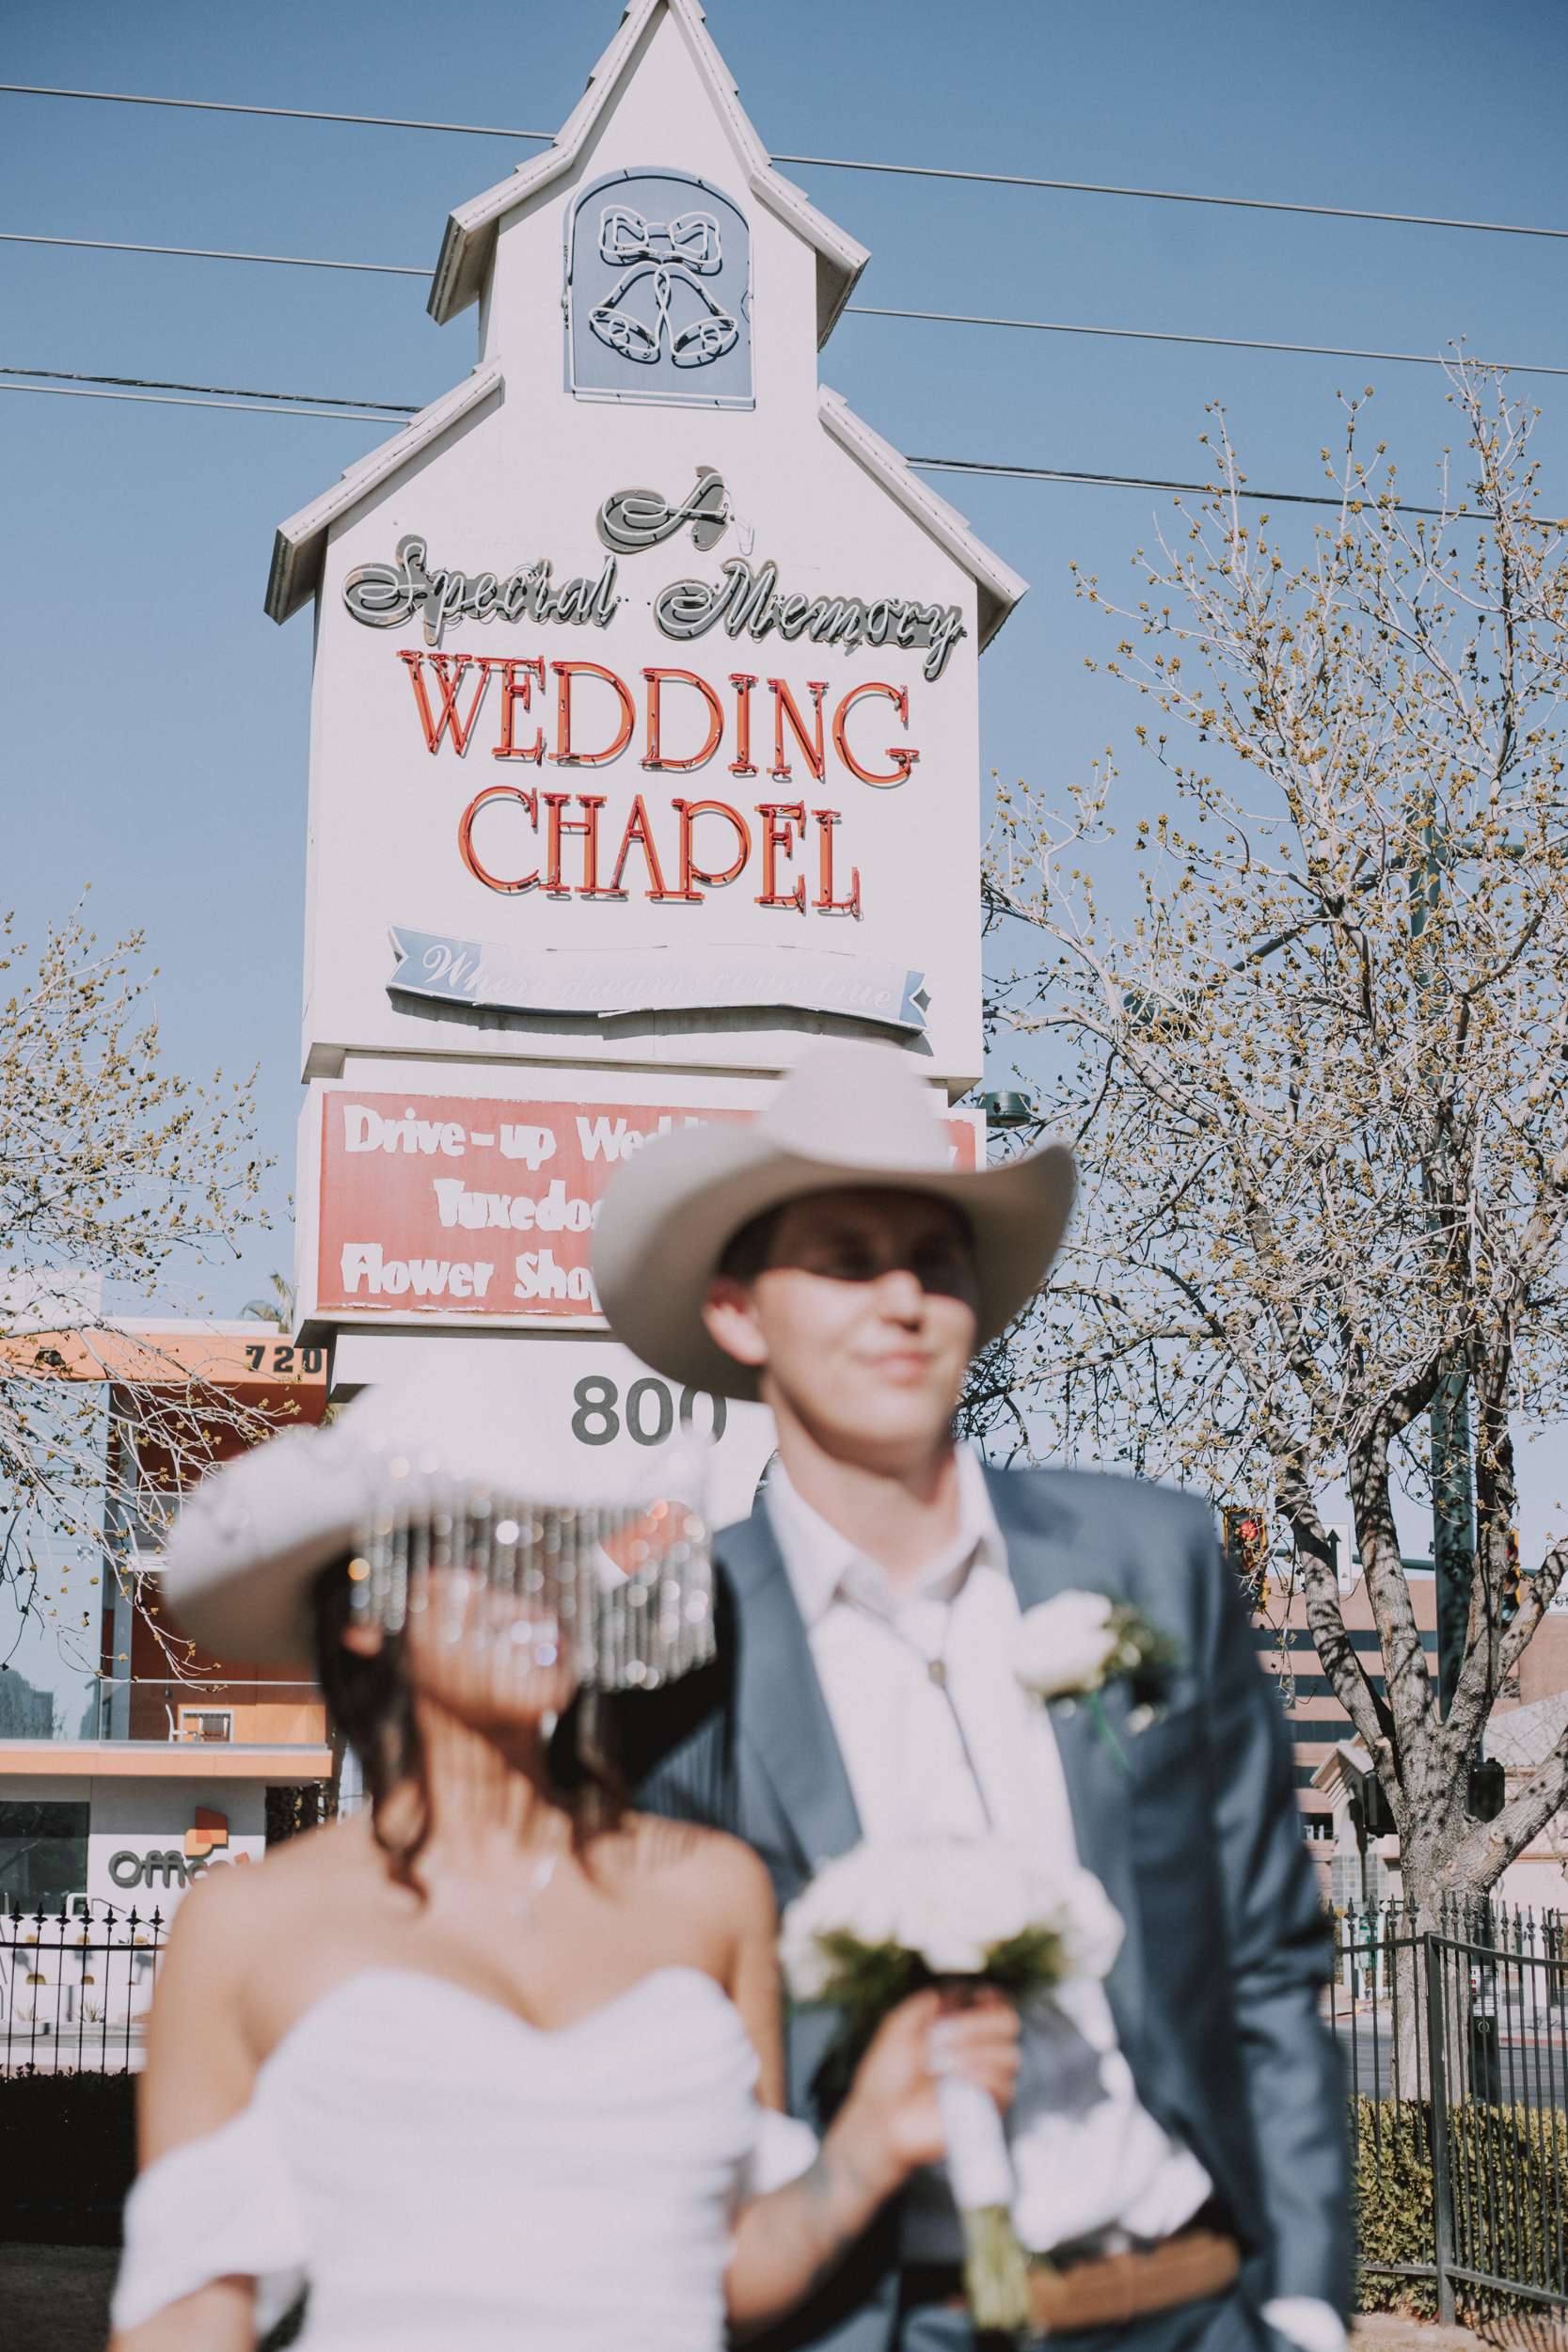 Classy, Sassy & A Bit Bad Assy: A Las Vegas Cowboys & Cowgirls Wedding ·  Rock n Roll Bride